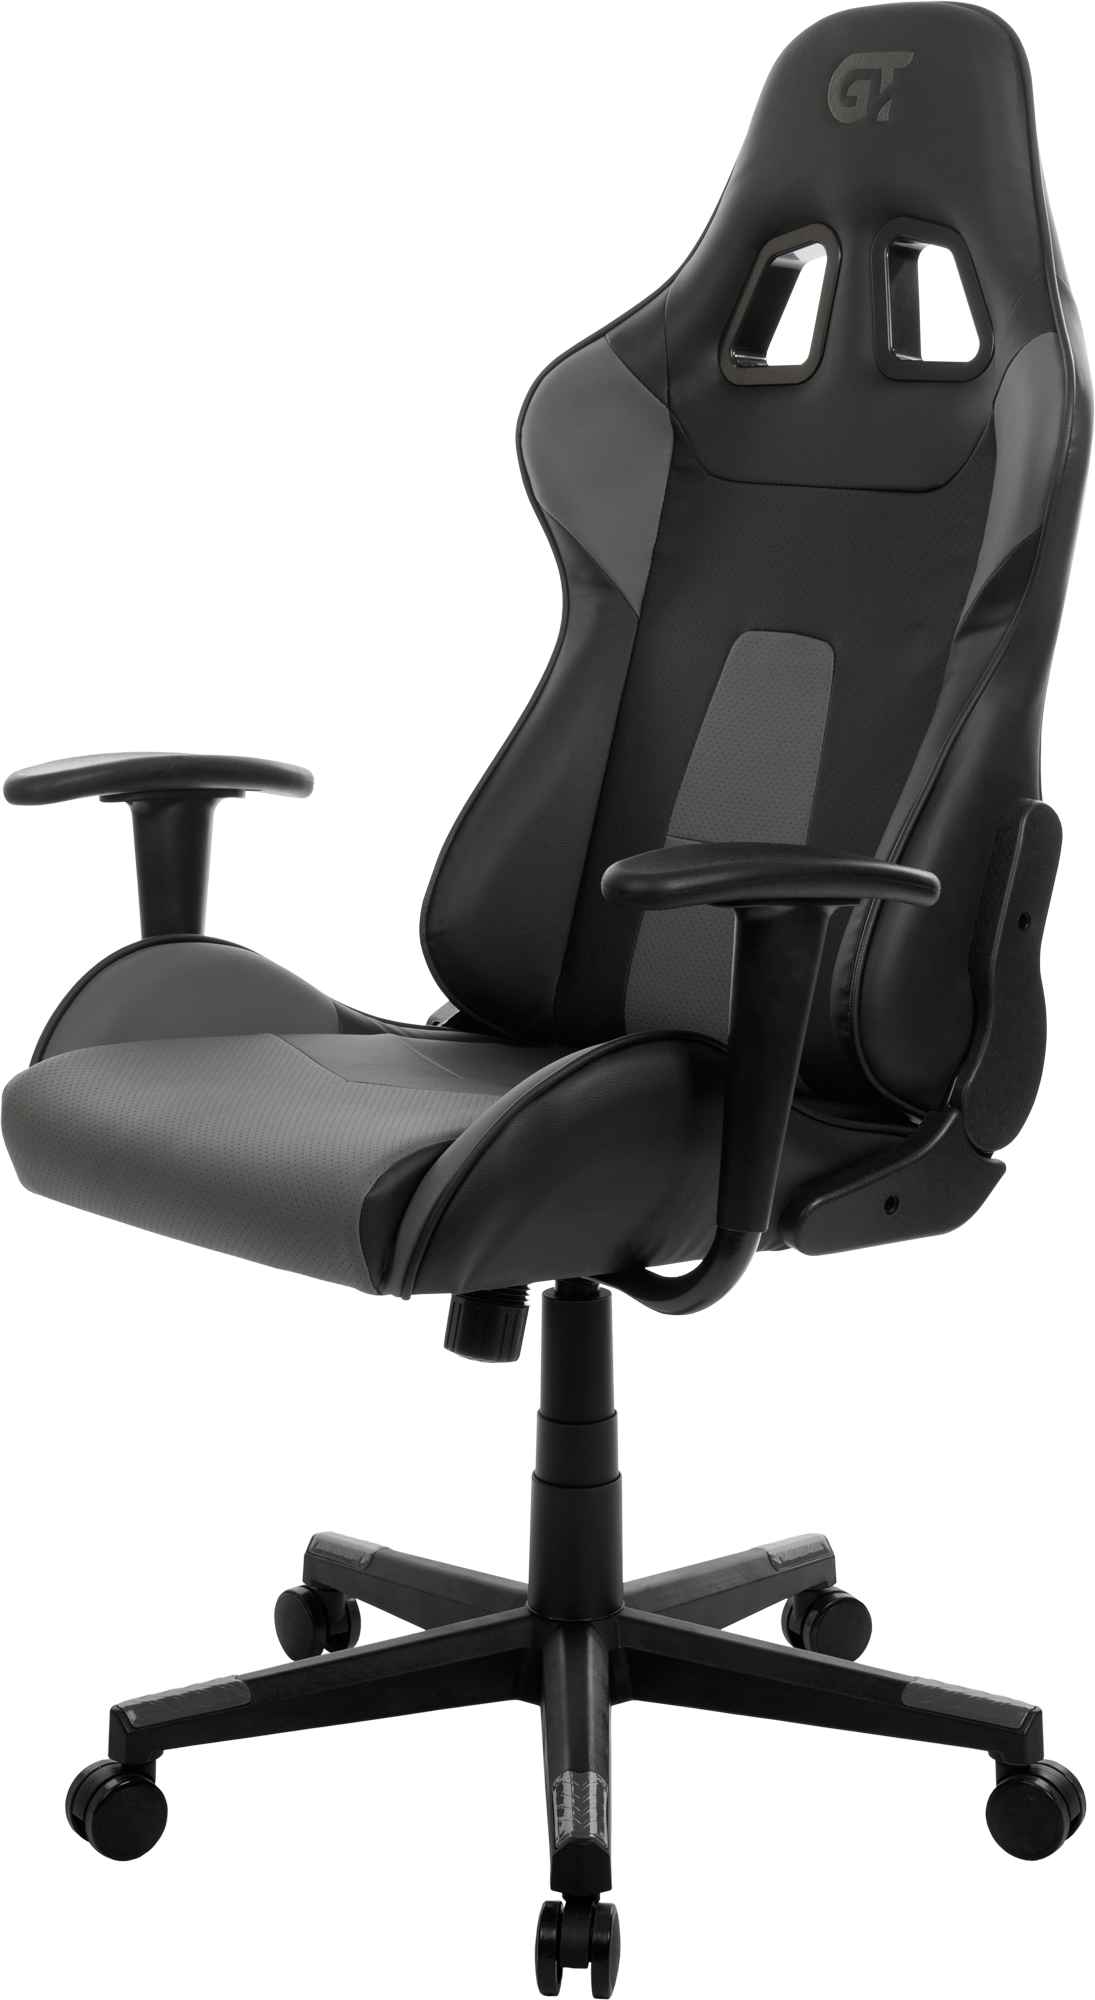 Геймерское кресло GT Racer черное с темно-серым (X-2317 Black/Dark Gray) - фото 2